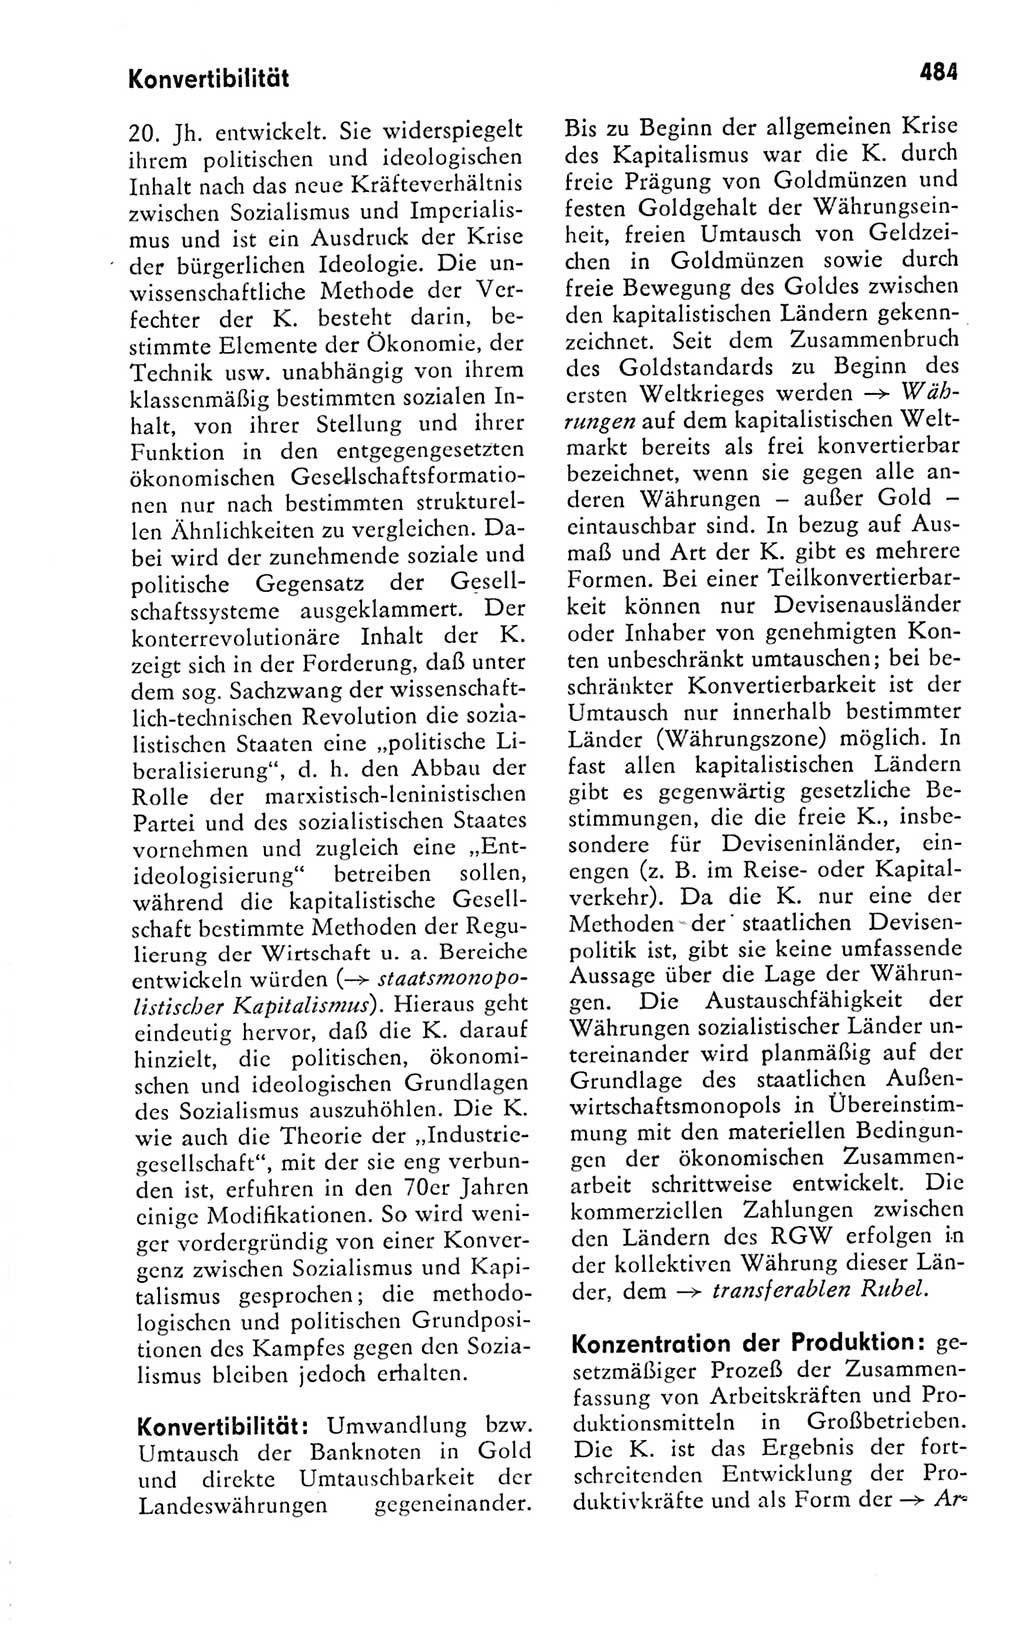 Kleines politisches Wörterbuch [Deutsche Demokratische Republik (DDR)] 1978, Seite 484 (Kl. pol. Wb. DDR 1978, S. 484)